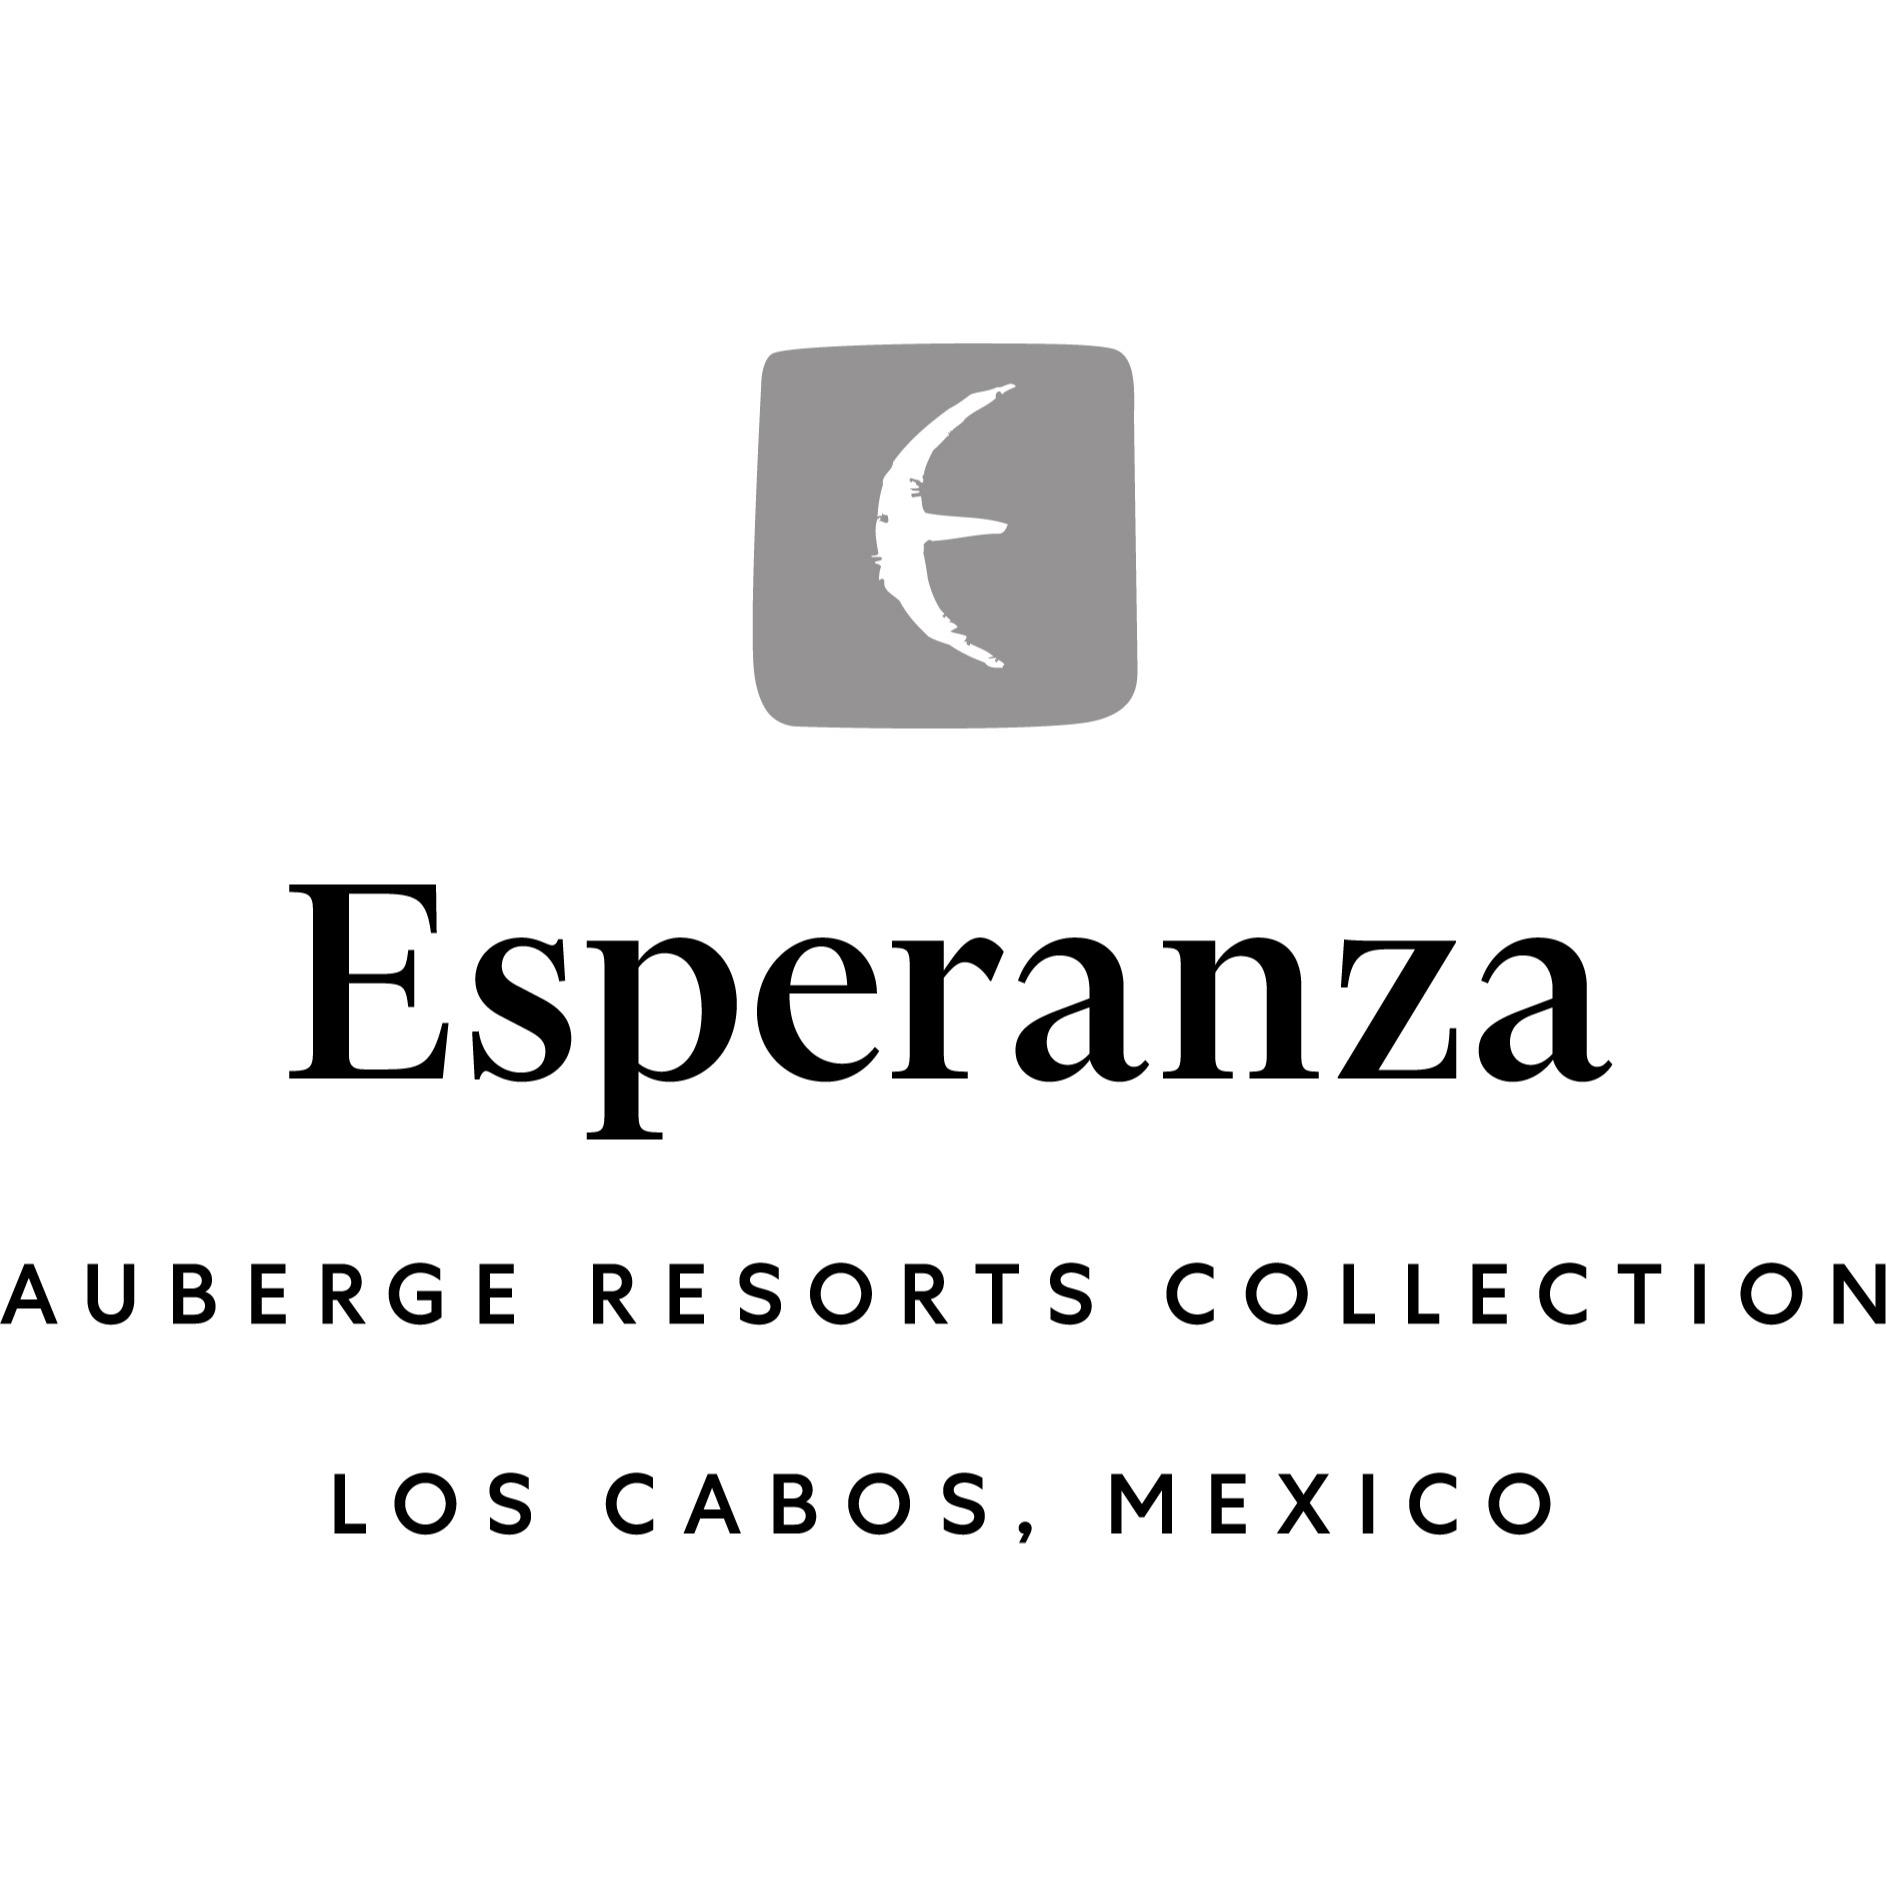 Esperanza, Auberge Resorts Collection Logo